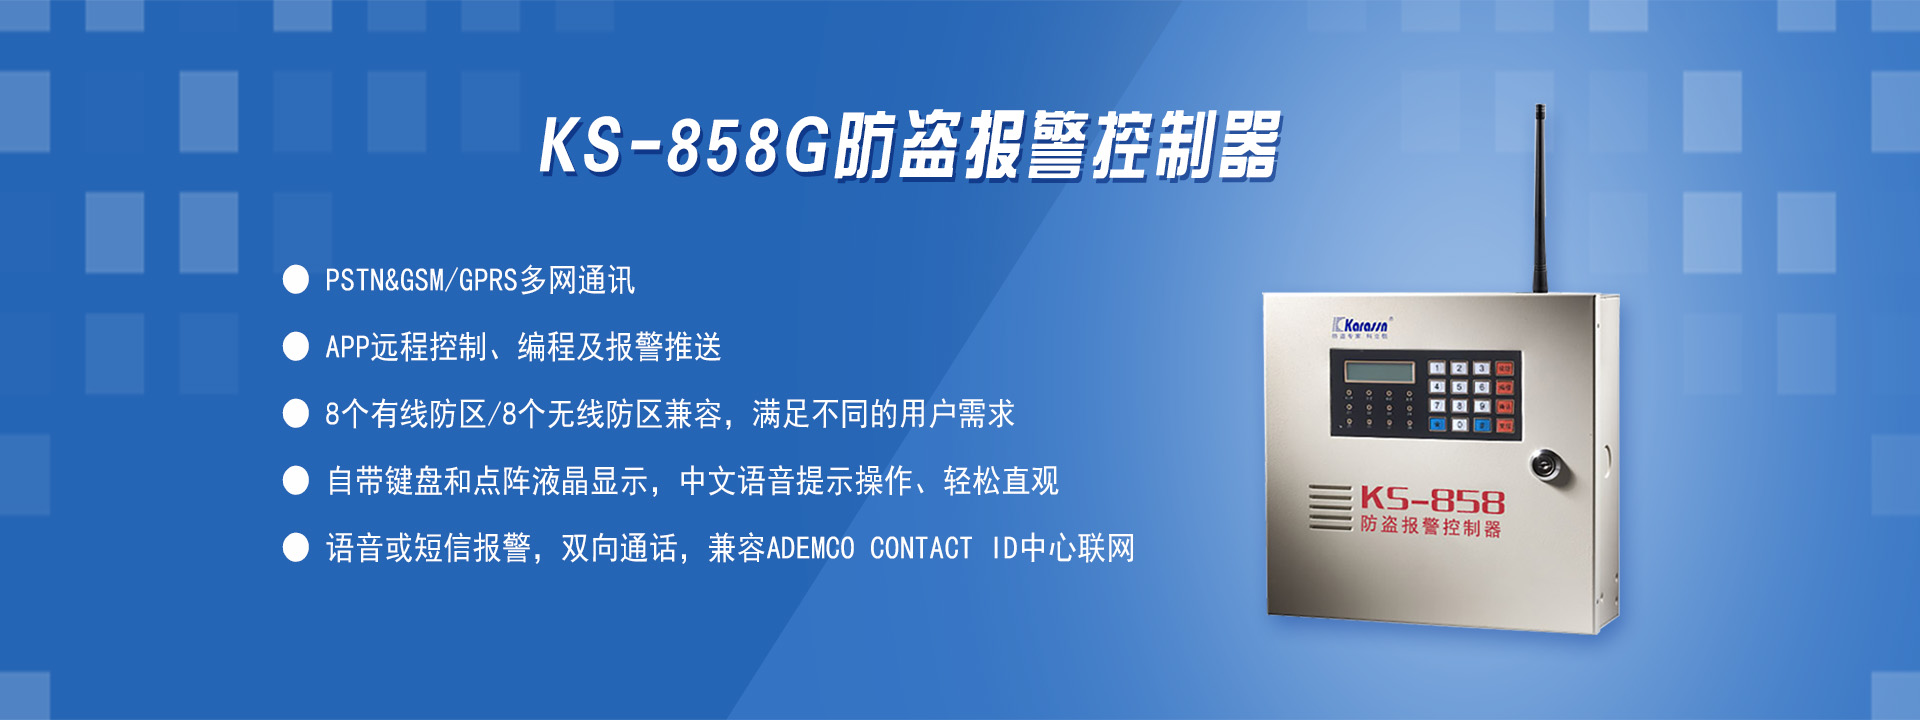 KS-858G雙網防盜報警控制器